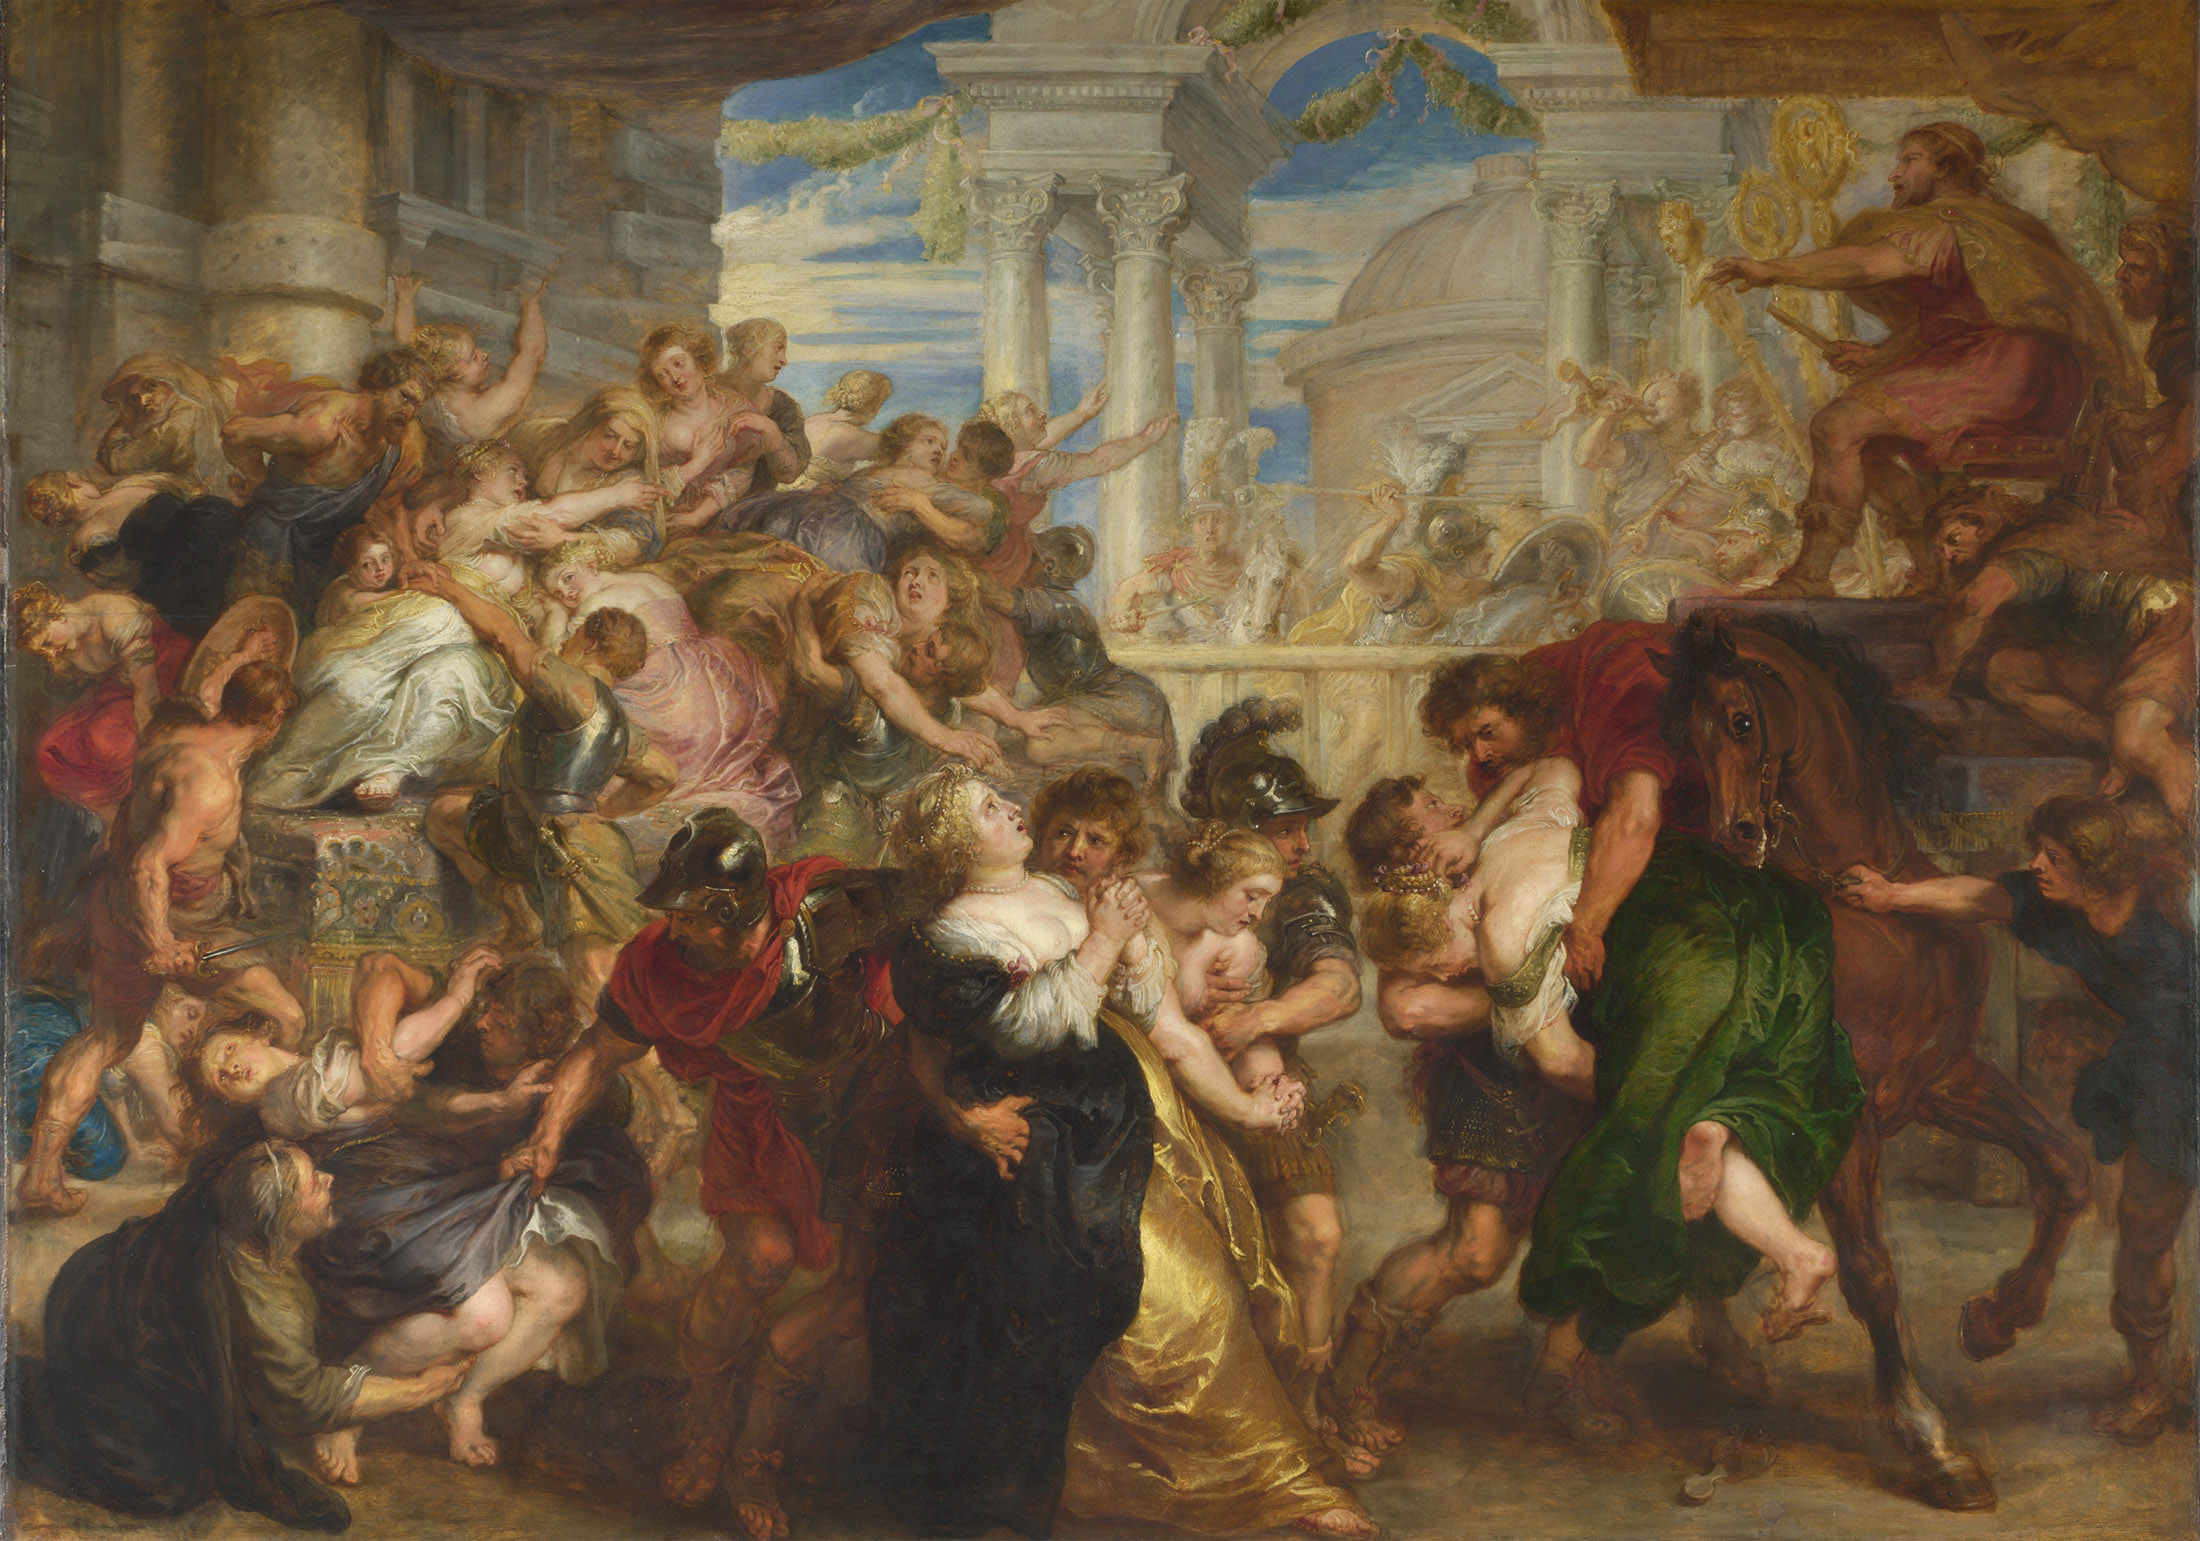 Peter Paul Rubens, L'enlèvement des sabines